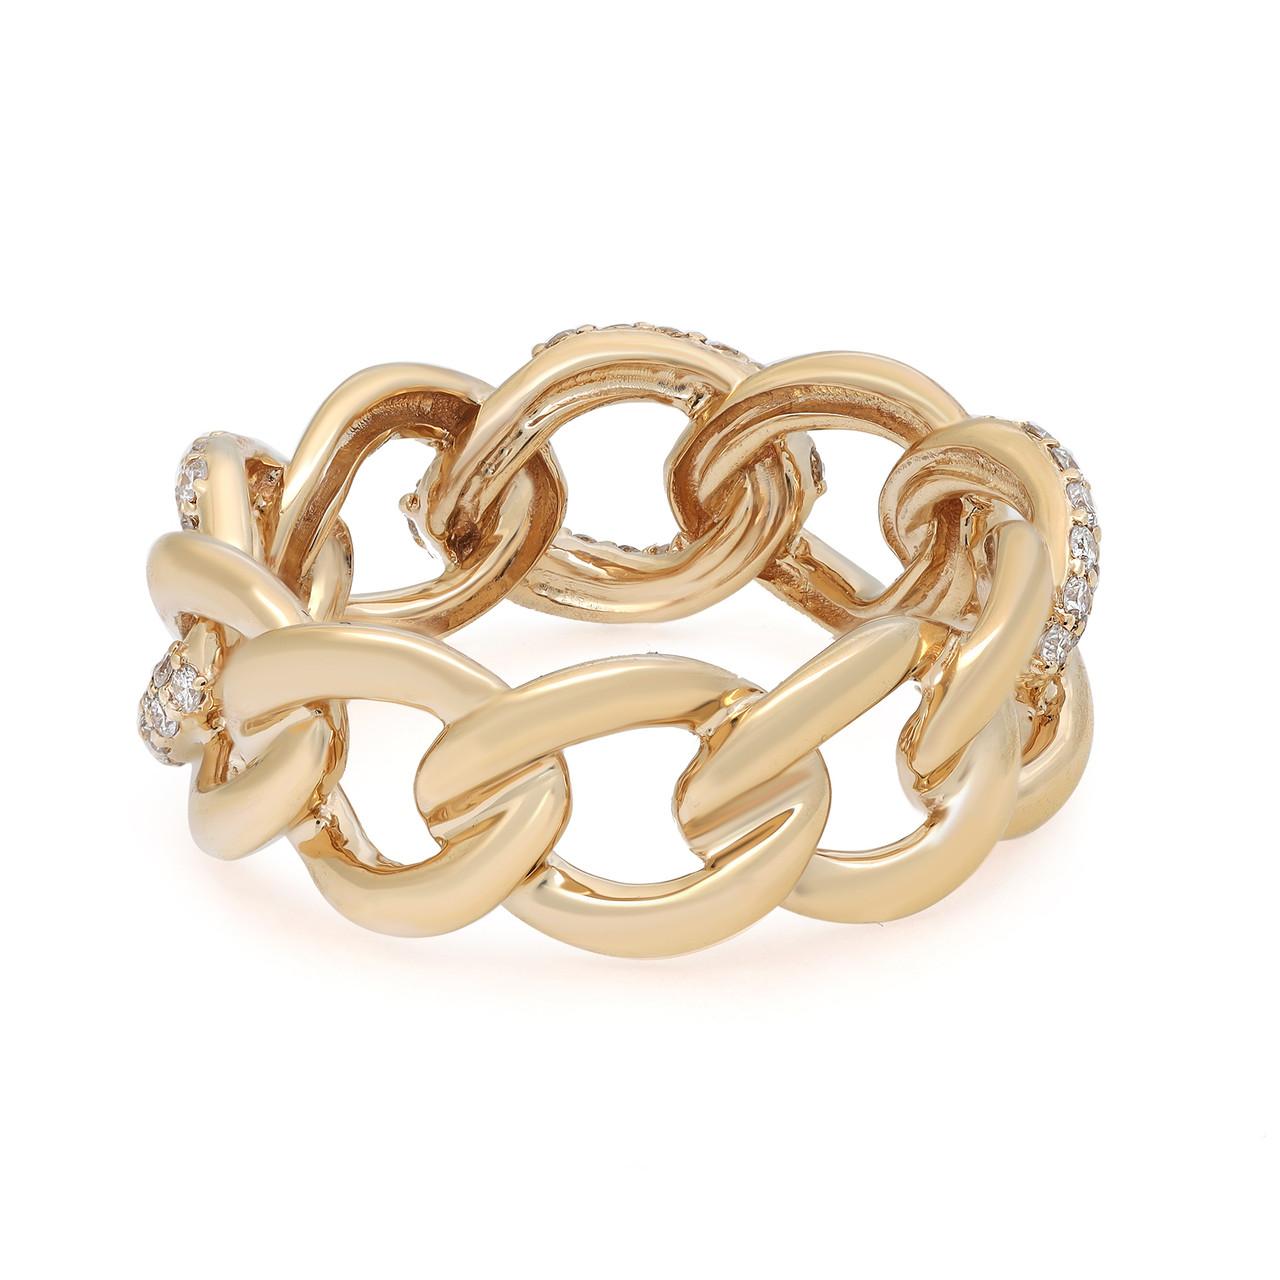 Unser schicker 0,50-Karat-Diamant-Kettenring aus luxuriösem 18-karätigem Gelbgold stellt sich vor. Dieser atemberaubende Ring verbindet moderne Ästhetik mit zeitloser Eleganz. Ein halber Karat Brillanten ist in stilvolle Kettenglieder